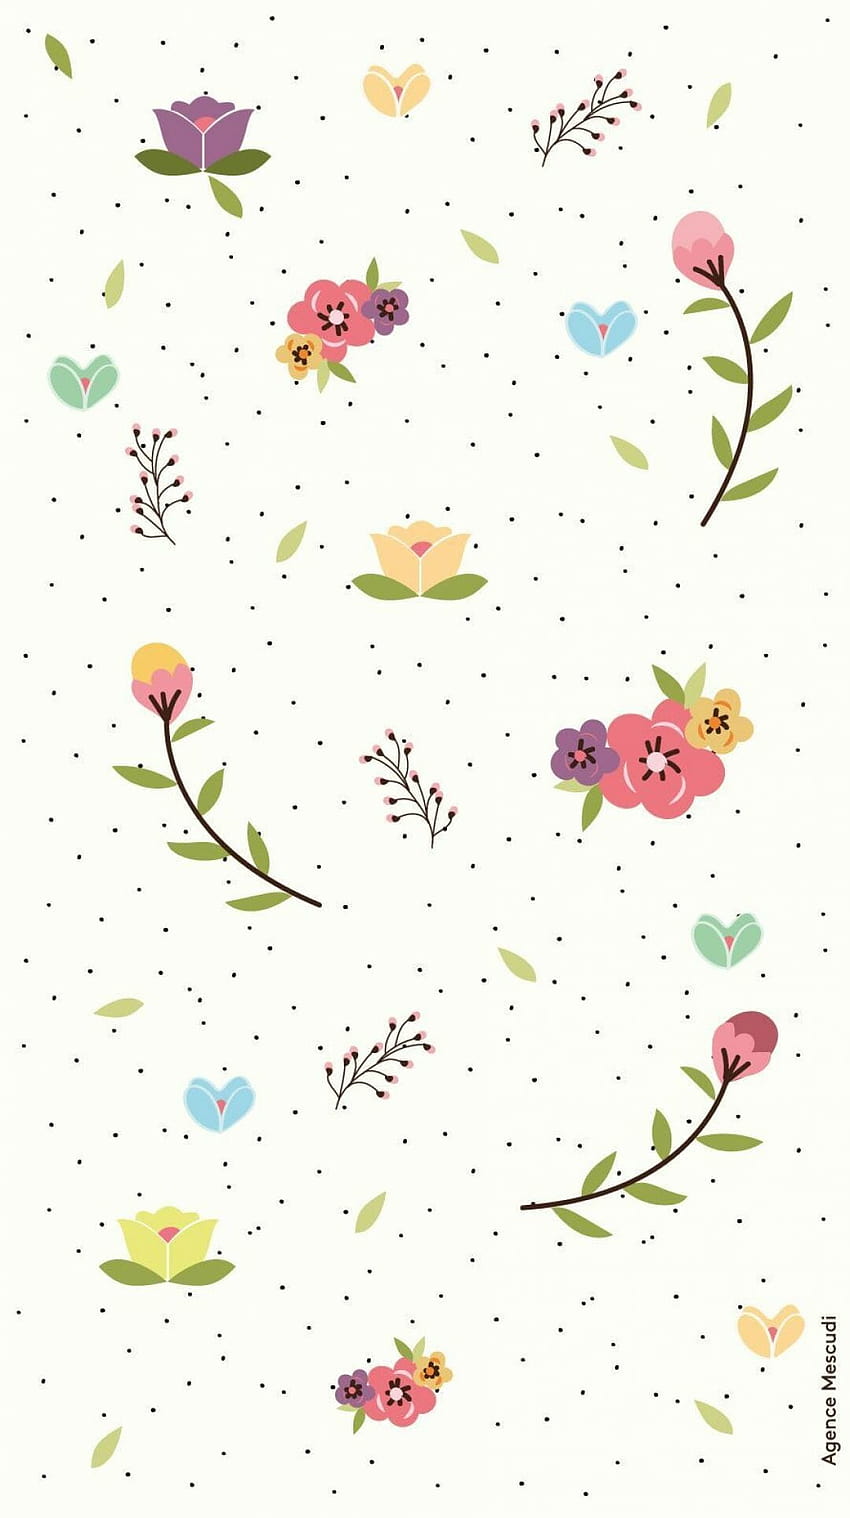 1 Bunga Ditekan lebih banyak bunga iPhone pada, musim semi 2022 wallpaper ponsel HD